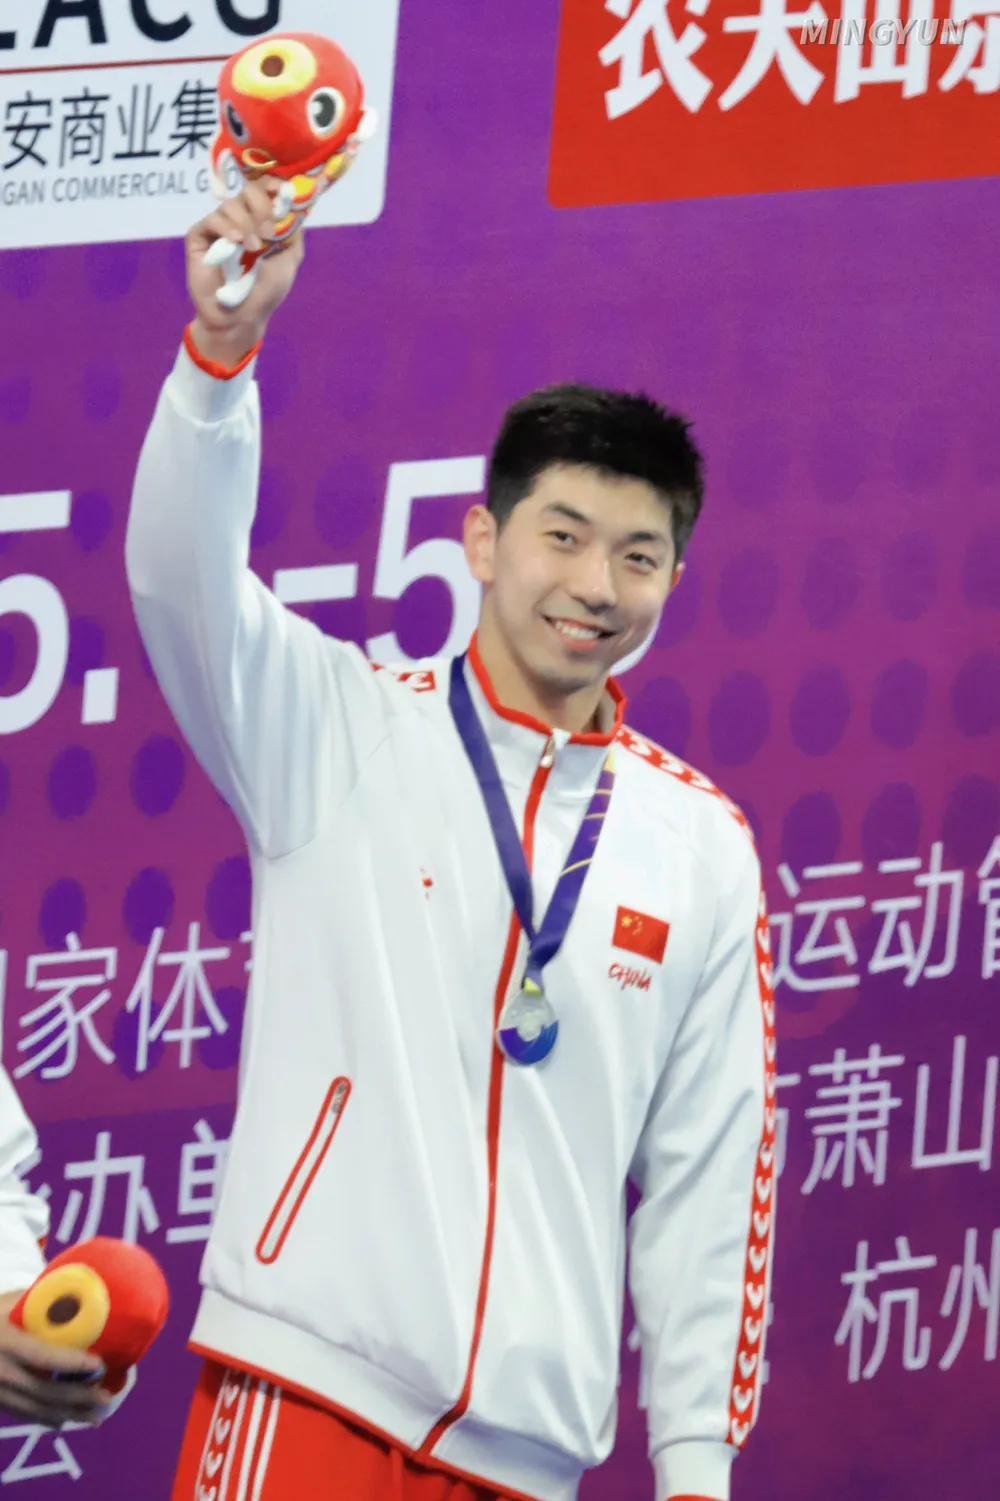 中国泳坛最帅的10个游泳运动员
1、宁泽涛，世锦赛100米自由泳冠军
2、汪顺，(6)